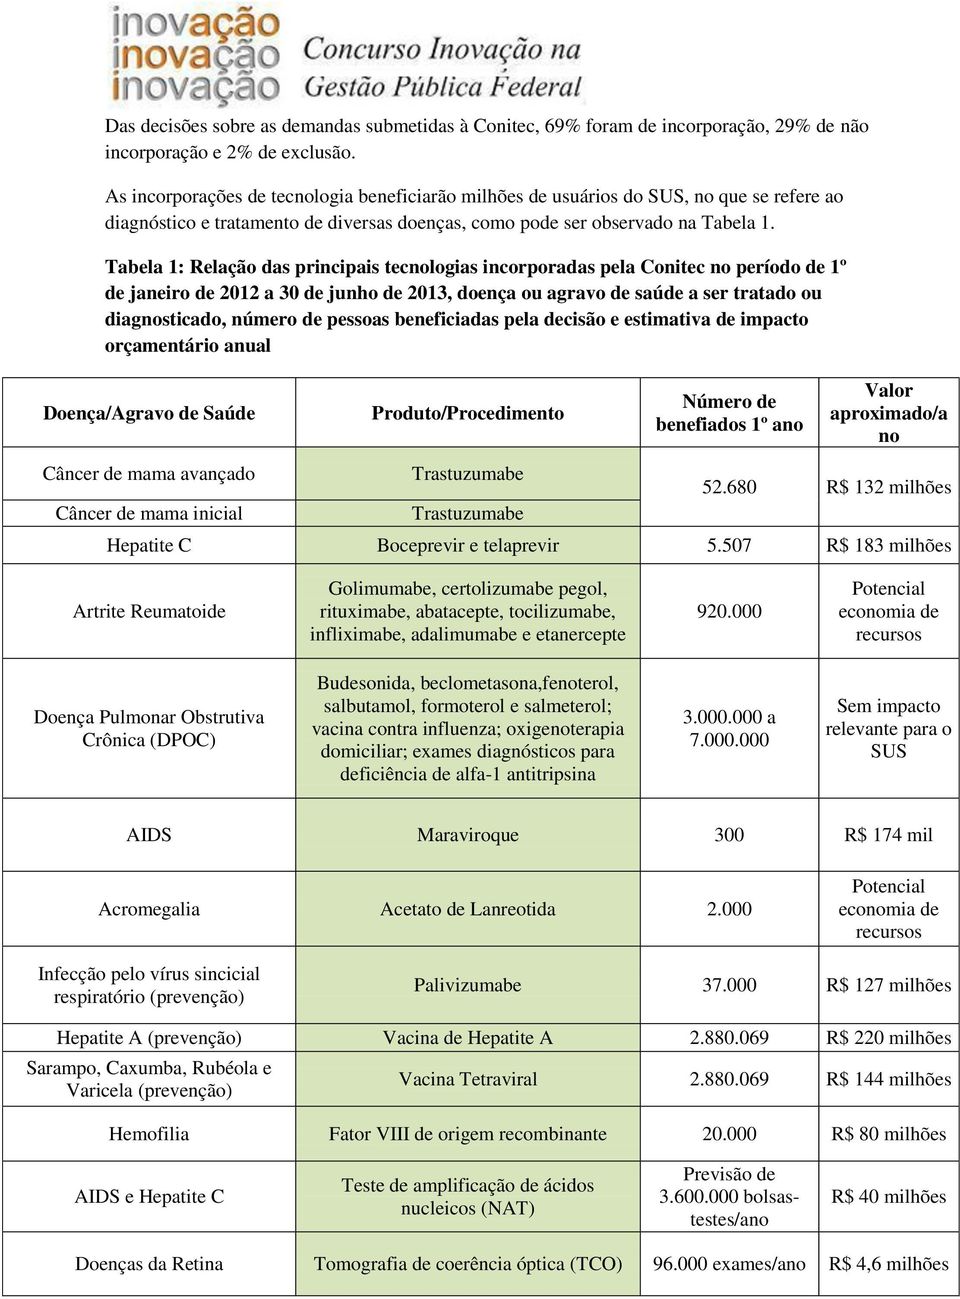 Tabela 1: Relação das principais tecnologias incorporadas pela Conitec no período de 1º de janeiro de 2012 a 30 de junho de 2013, doença ou agravo de saúde a ser tratado ou diagnosticado, número de